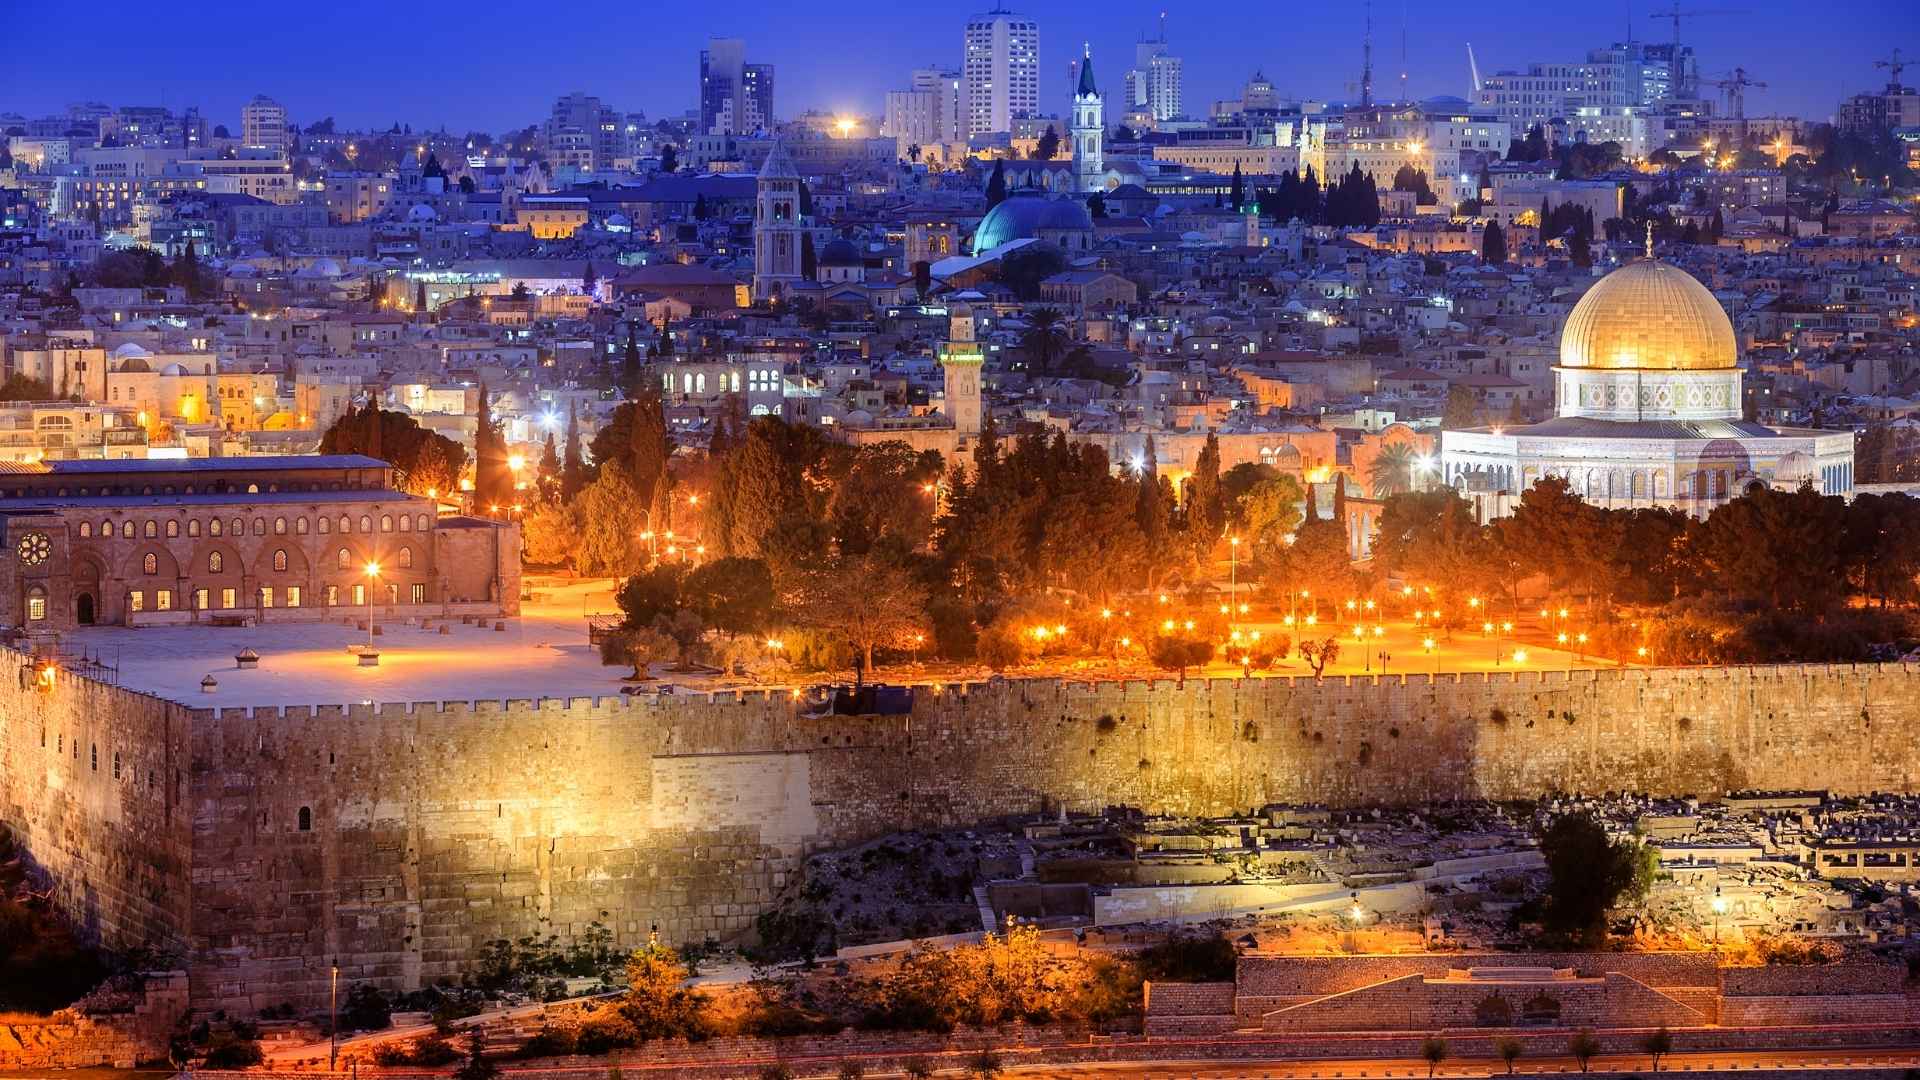 מה המשמעות של המשפט בברכה אם אשכחך ירושלים?